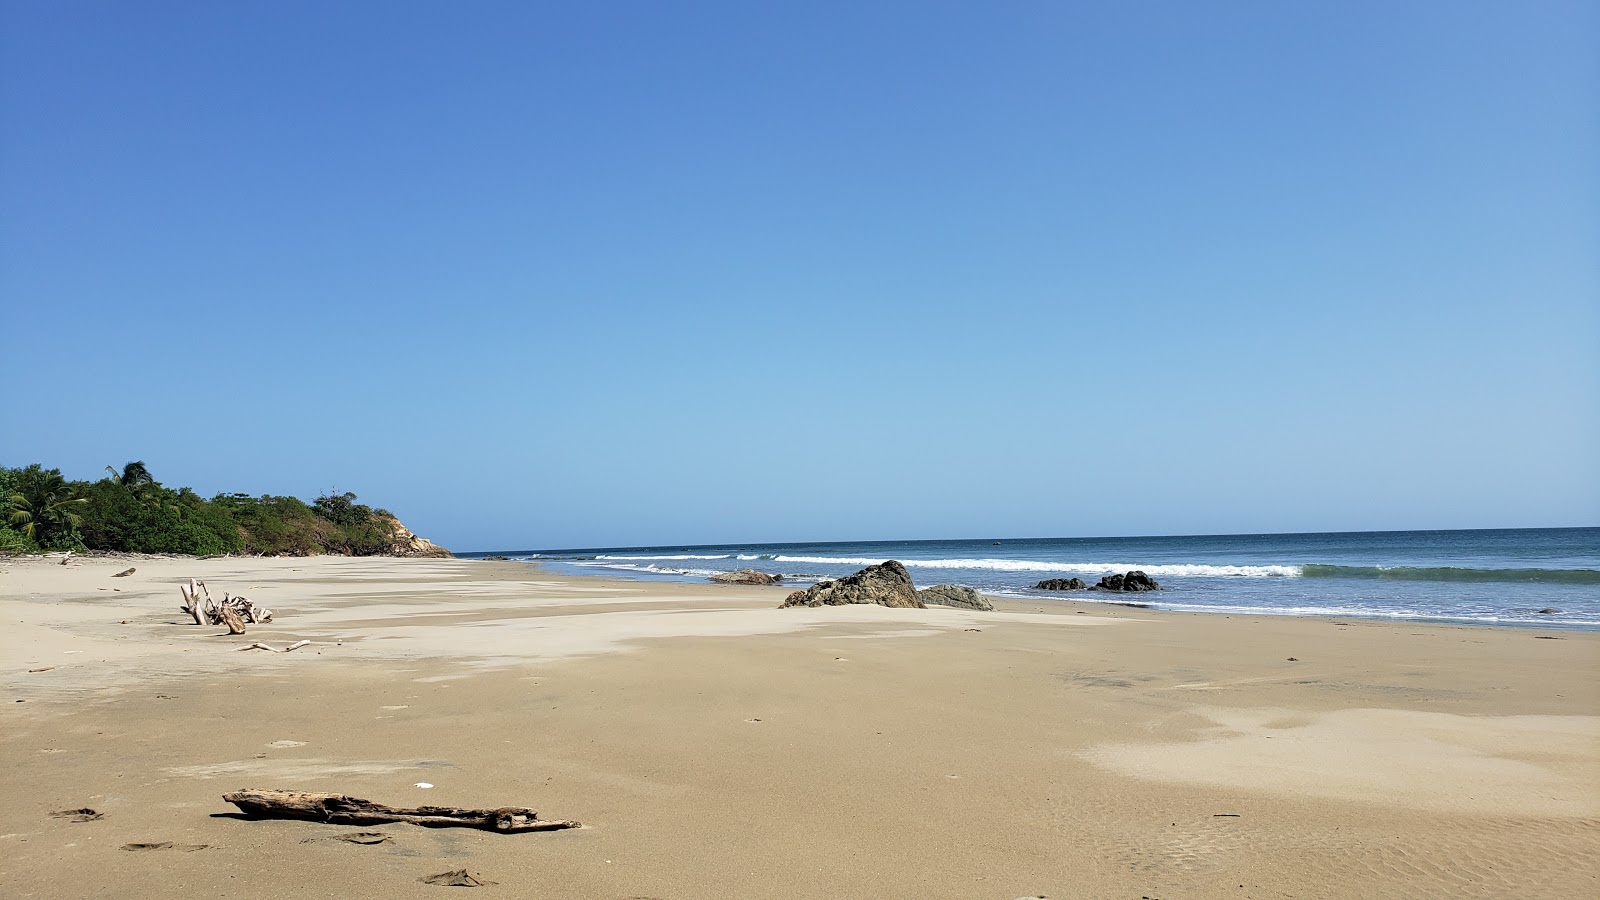 Fotografija Panamaes Beach nahaja se v naravnem okolju